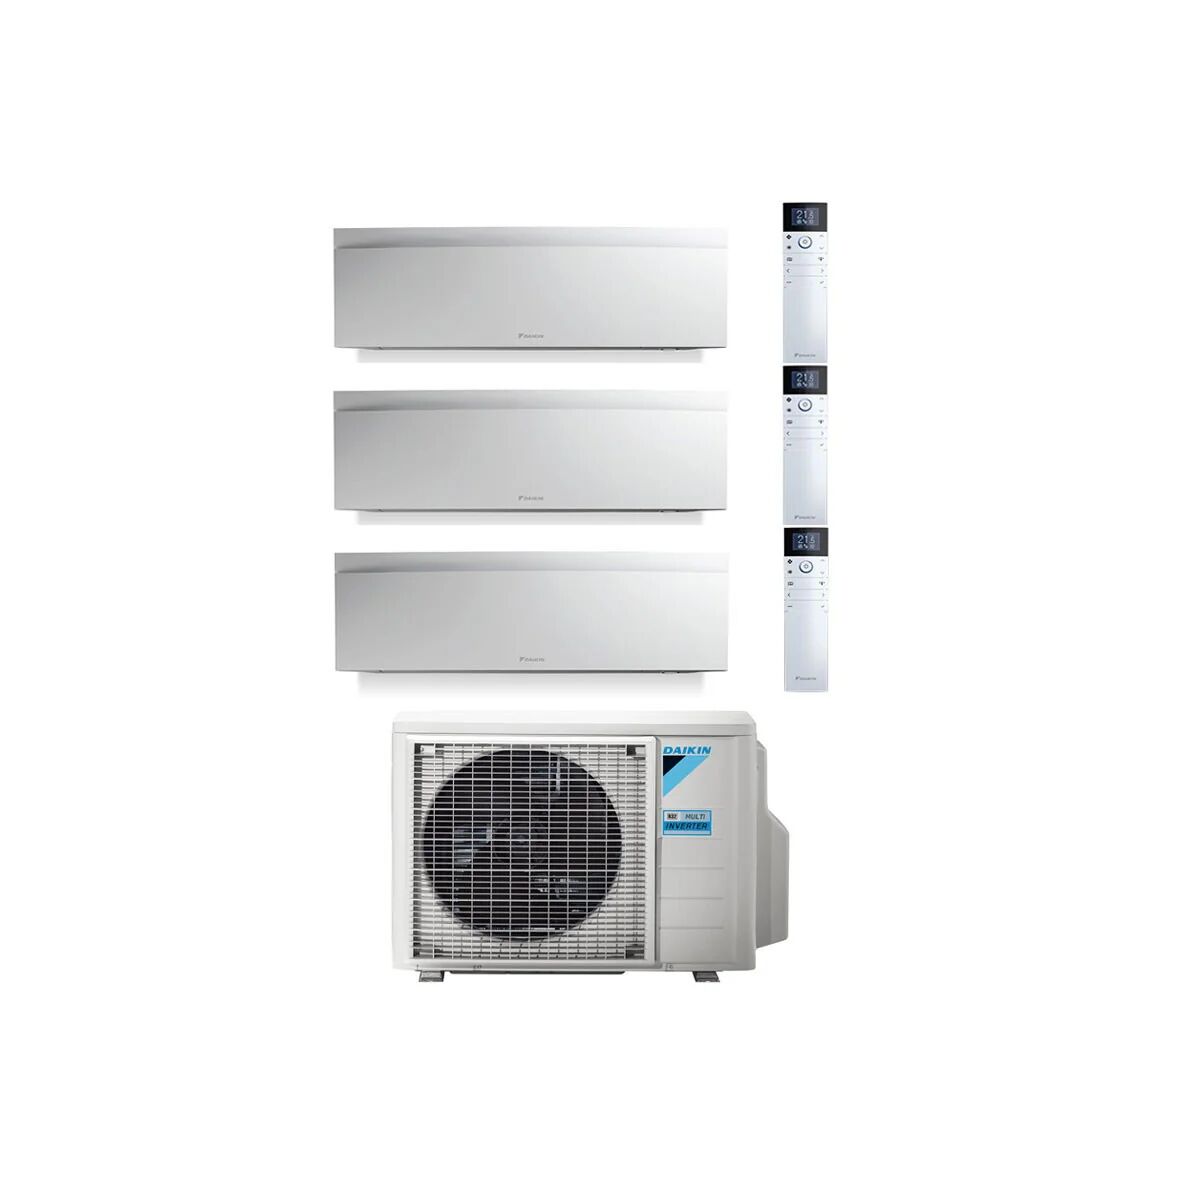 Condizionatore Daikin Emura Bianco Trial Split 7000+7000+7000 Btu Inverter R32 3Mxm52 A+++ Wifi (3MXM52 7+7+7)